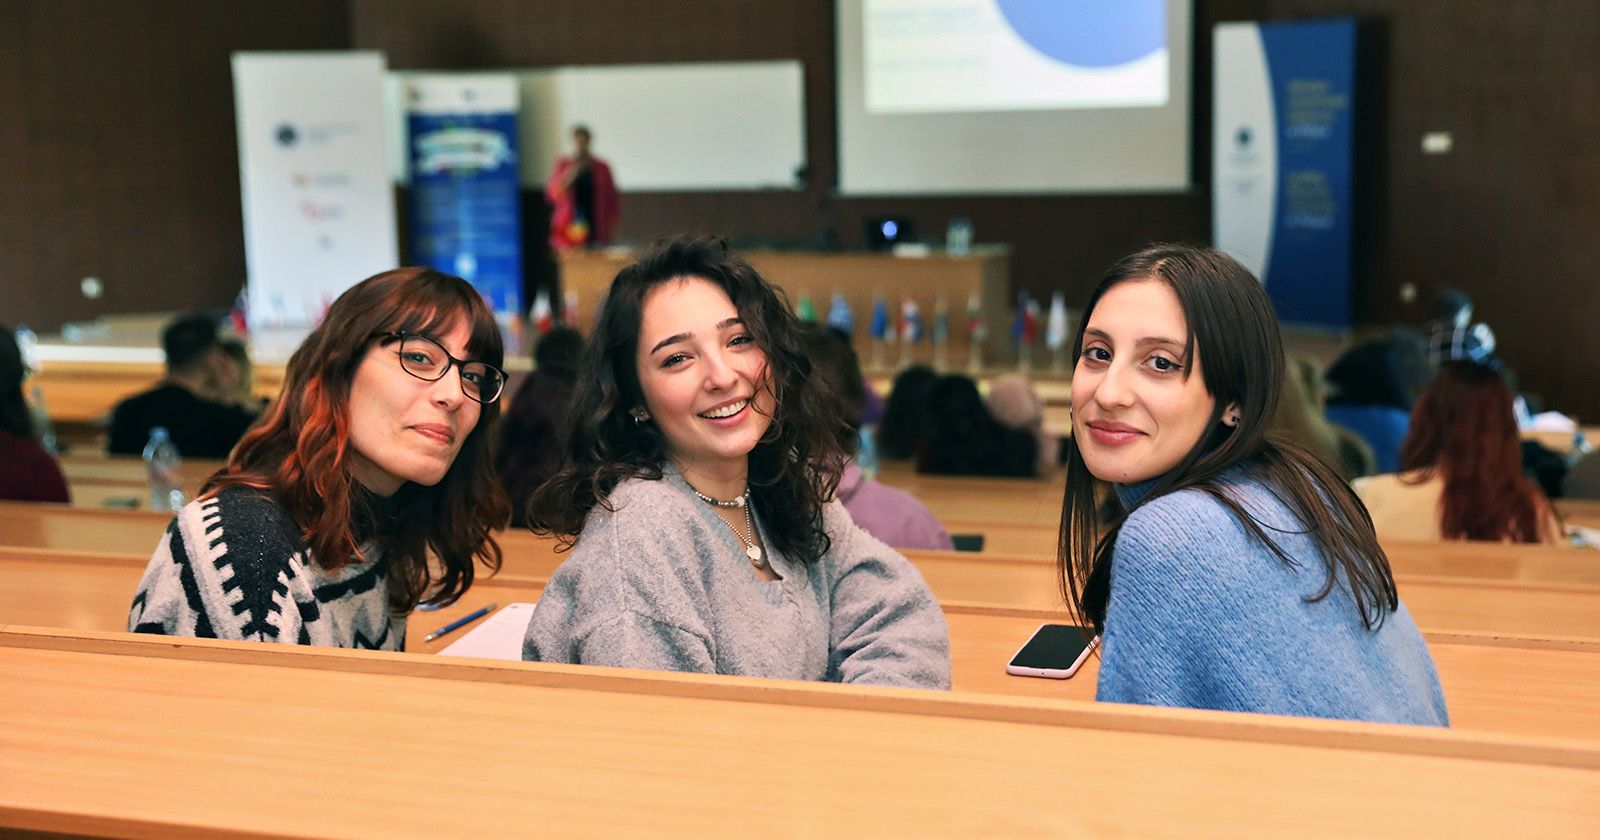 Tydzień Orientacyjny potrwa do 7 marca 2023 r. Trzy dziewczyny podczas jednego z wykładów na Wydziale Nauk Ekonomicznych i Zarządzania